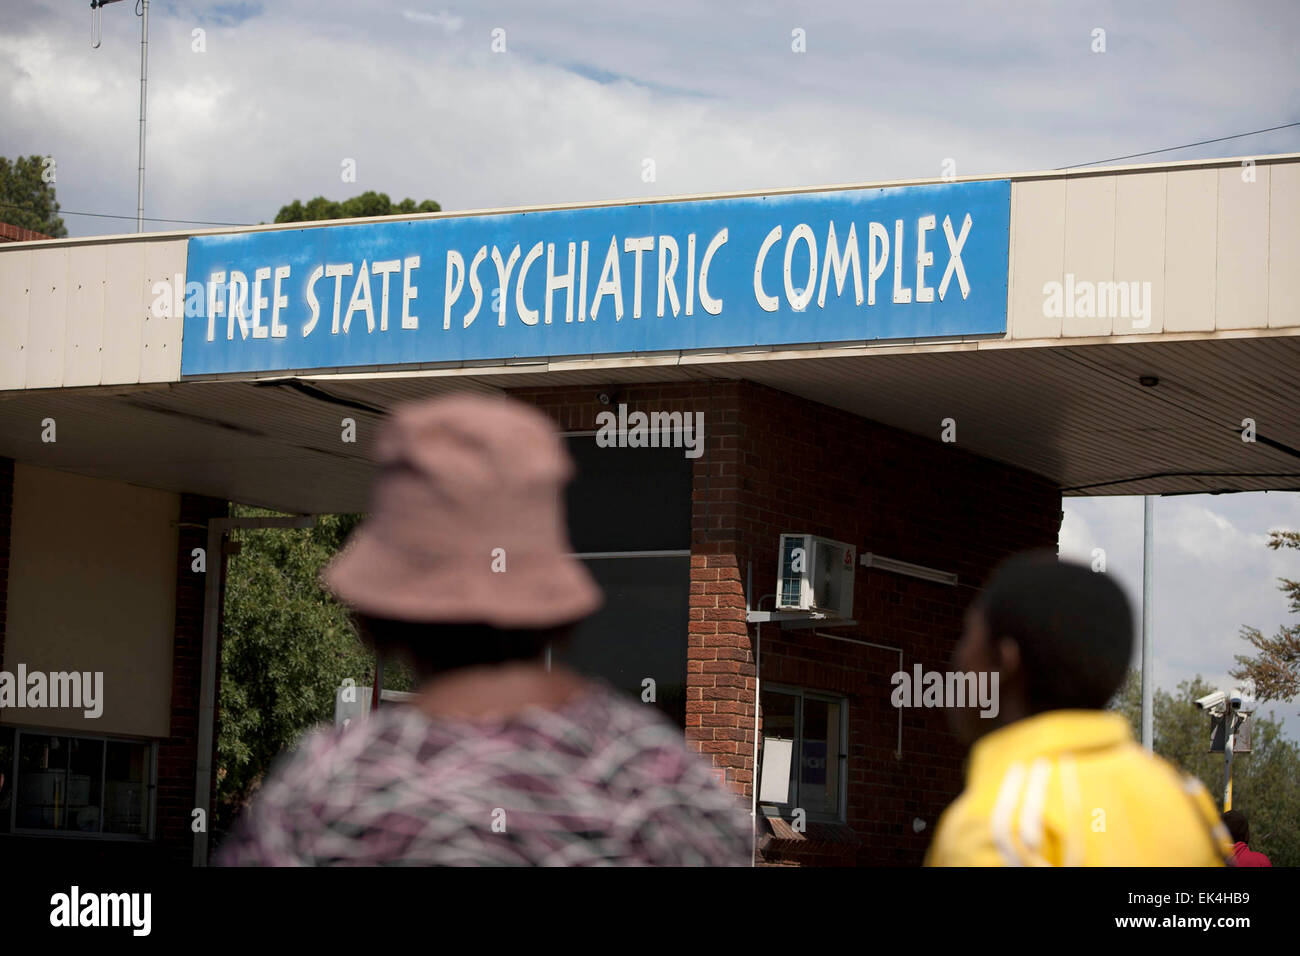 Free State Psychiatric Complex in Mangaung, Freistaat wo pflegenden erbringen ihre Dienstleistungen und ein Stipendium gezahlt wurden aber nicht Vollzeit Employment in finden. 04.01.14 Foto: 32-jährige Nkosi Stockfoto